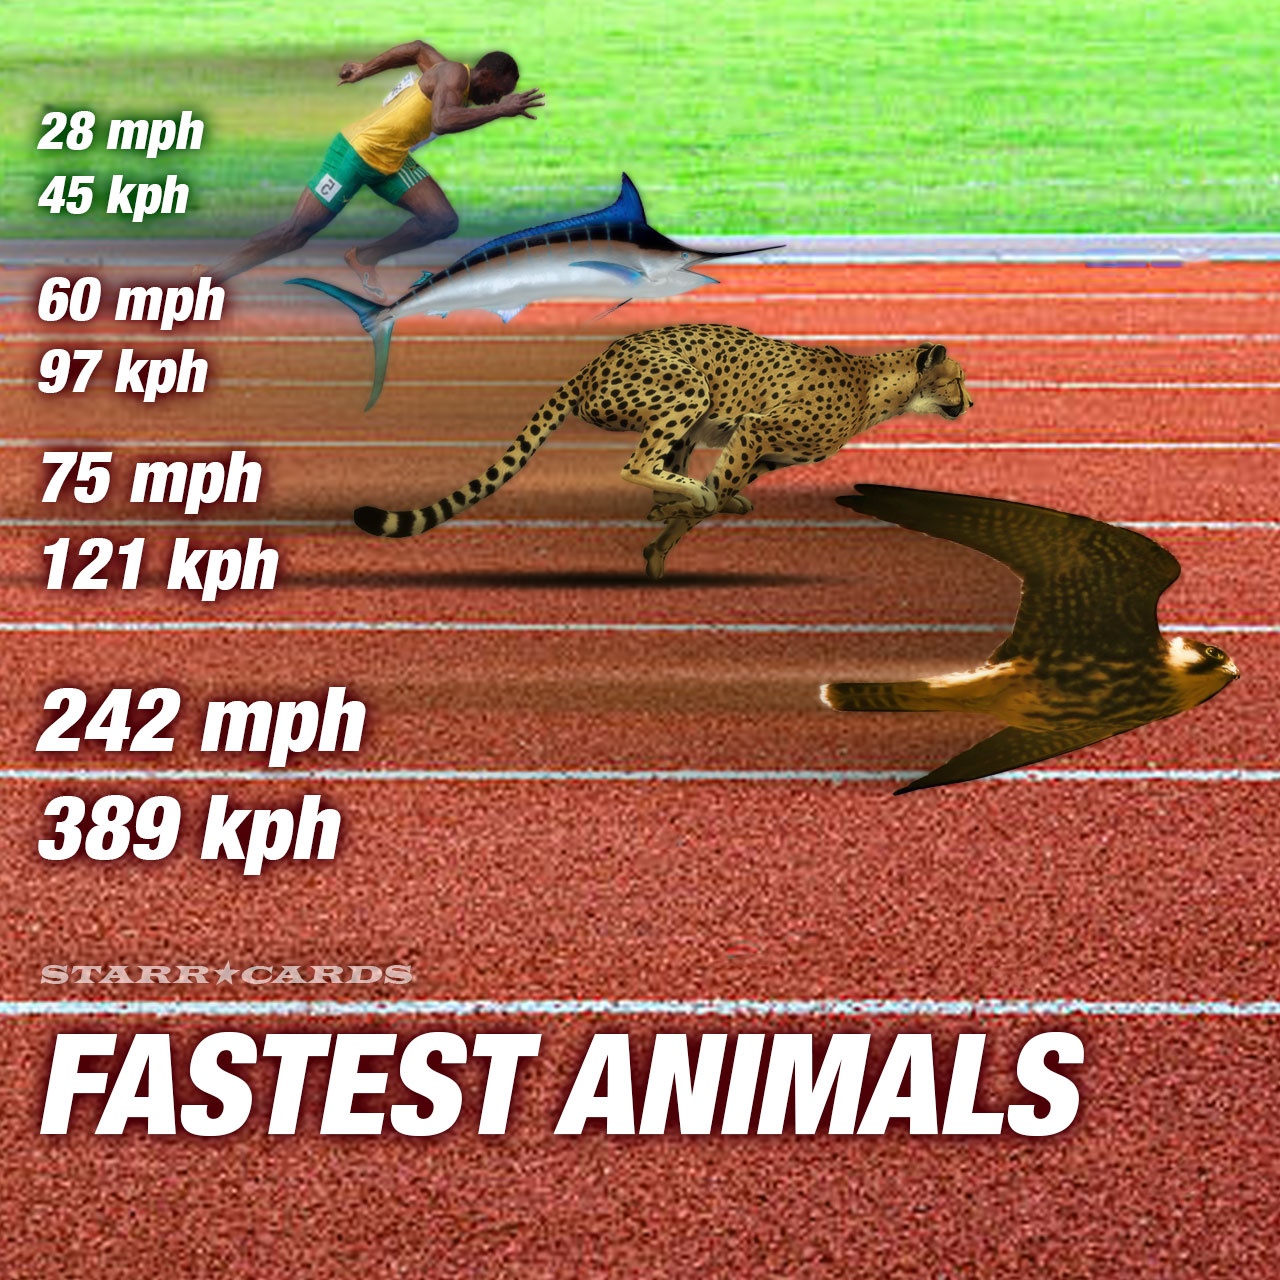 Who run faster than cheetah?